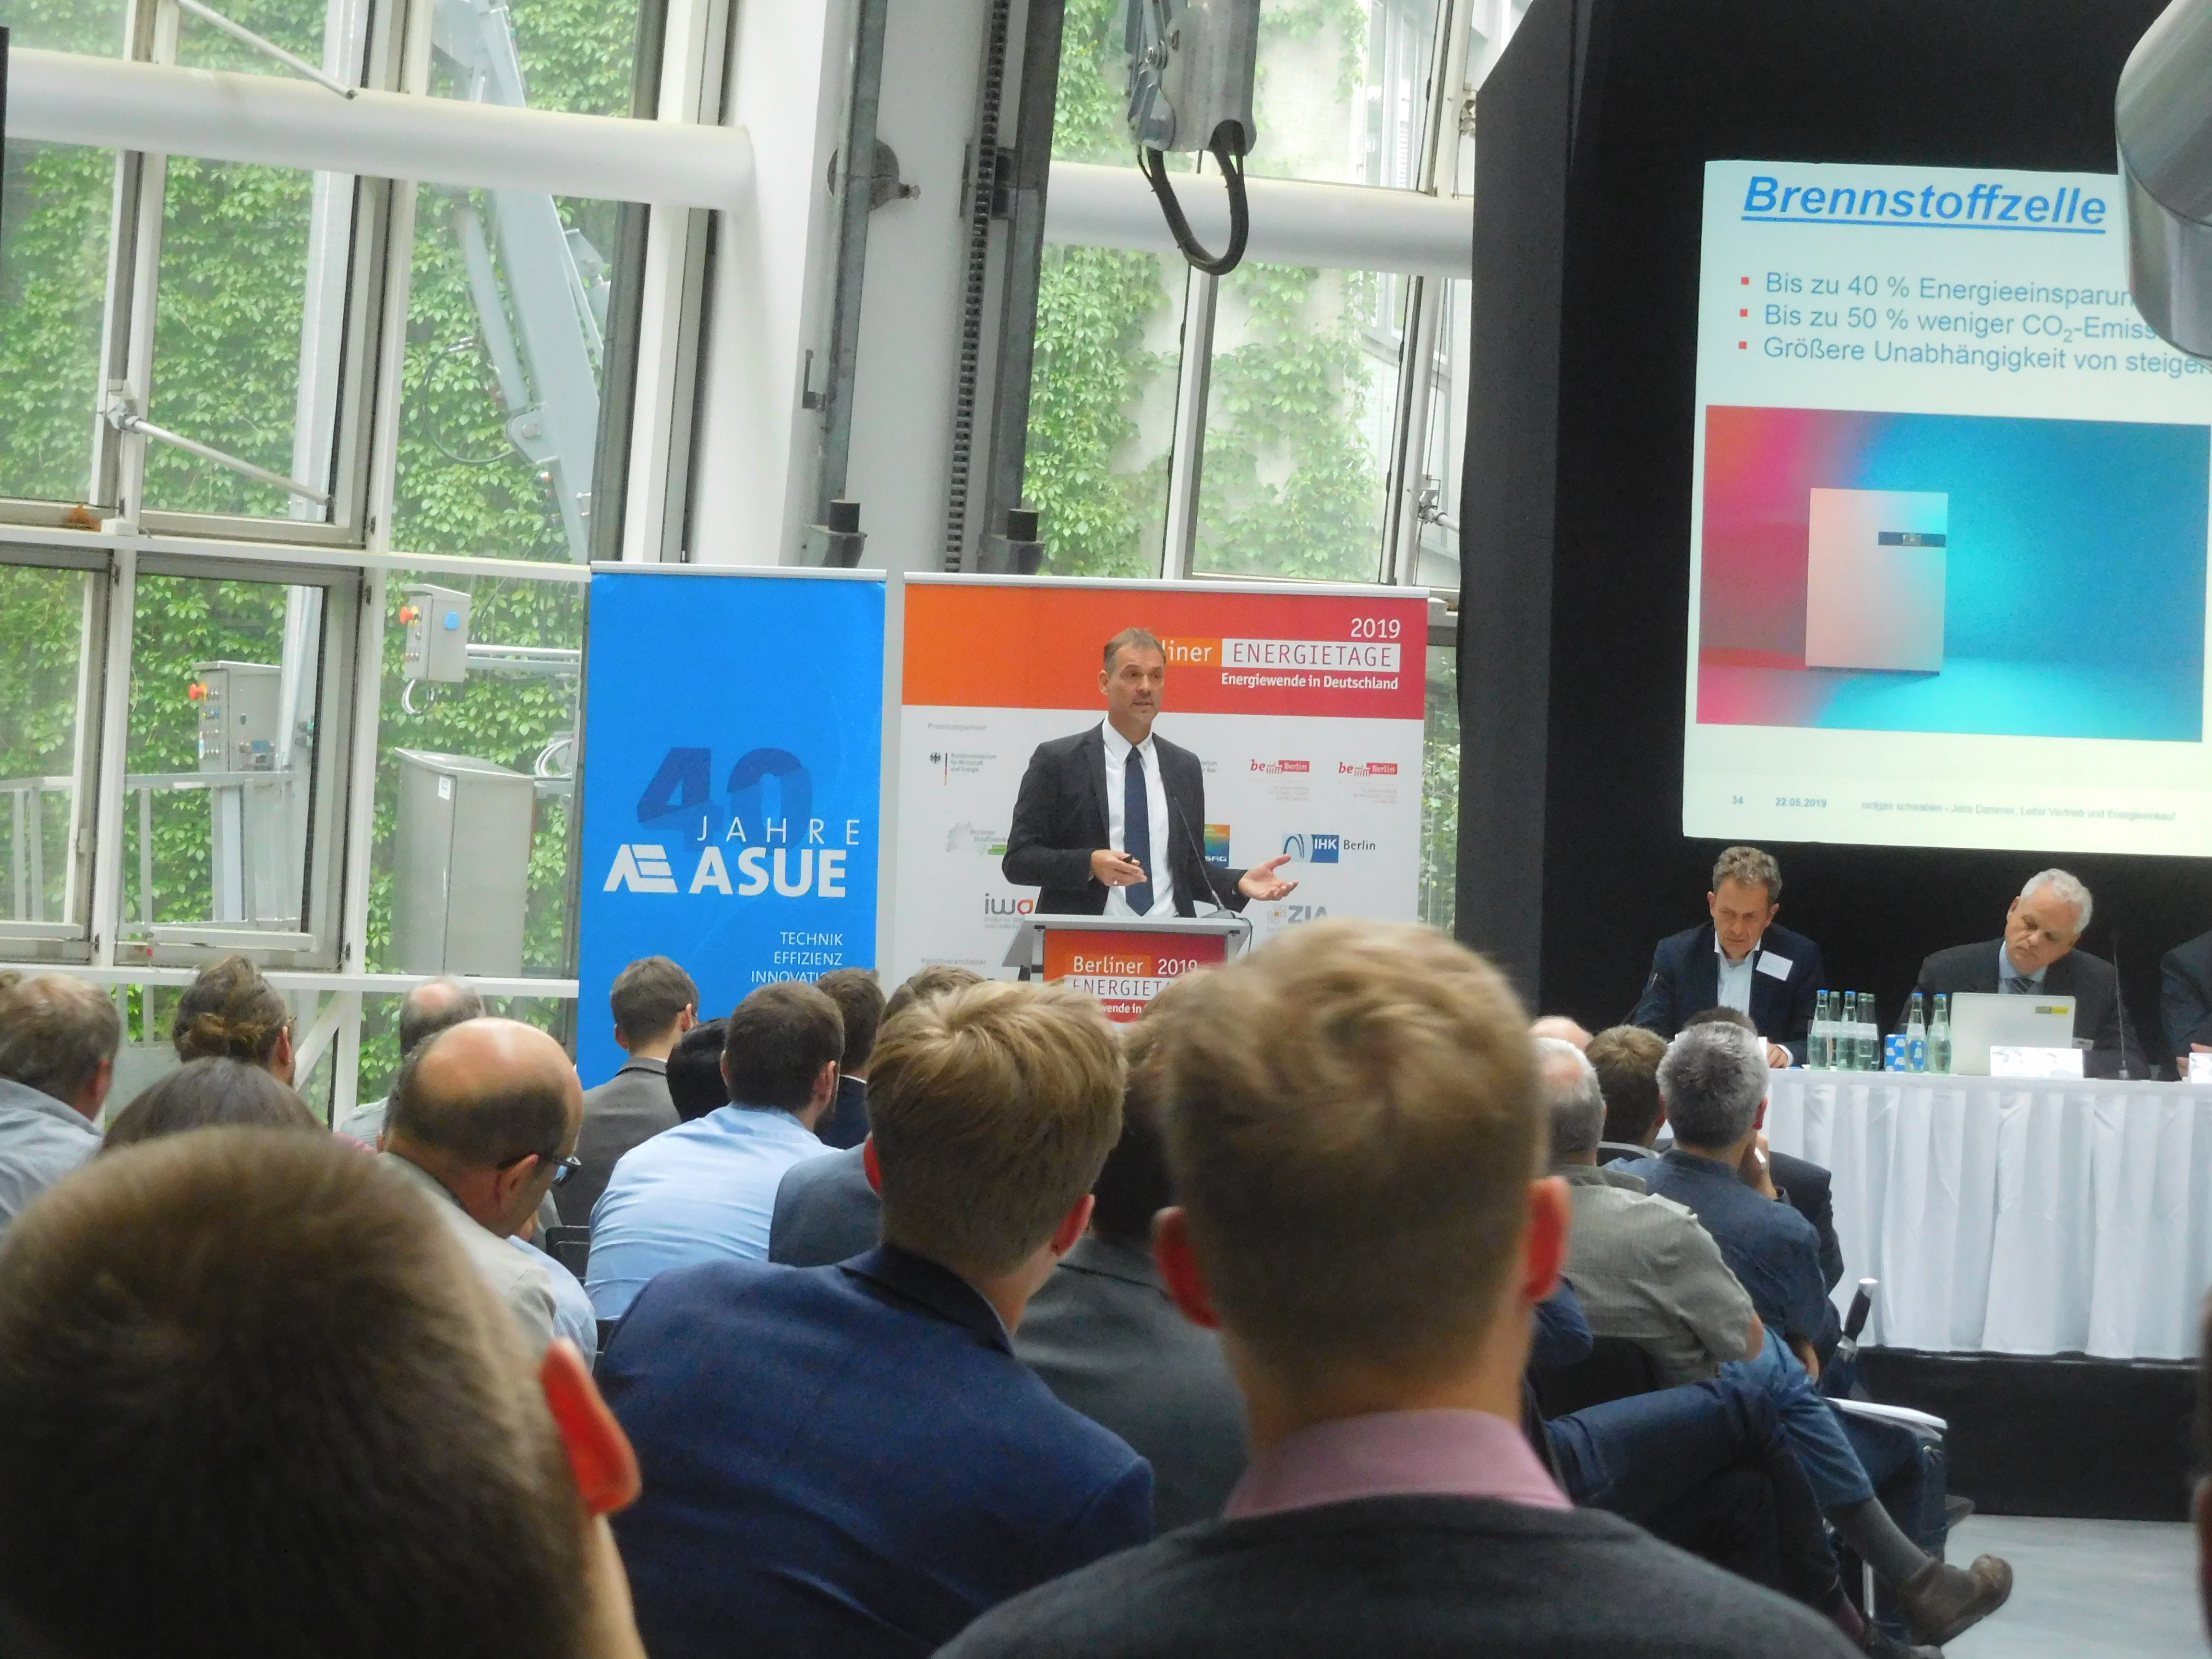 Jens Dammer von der erdgas schwaben GmbH während seines Vortrags